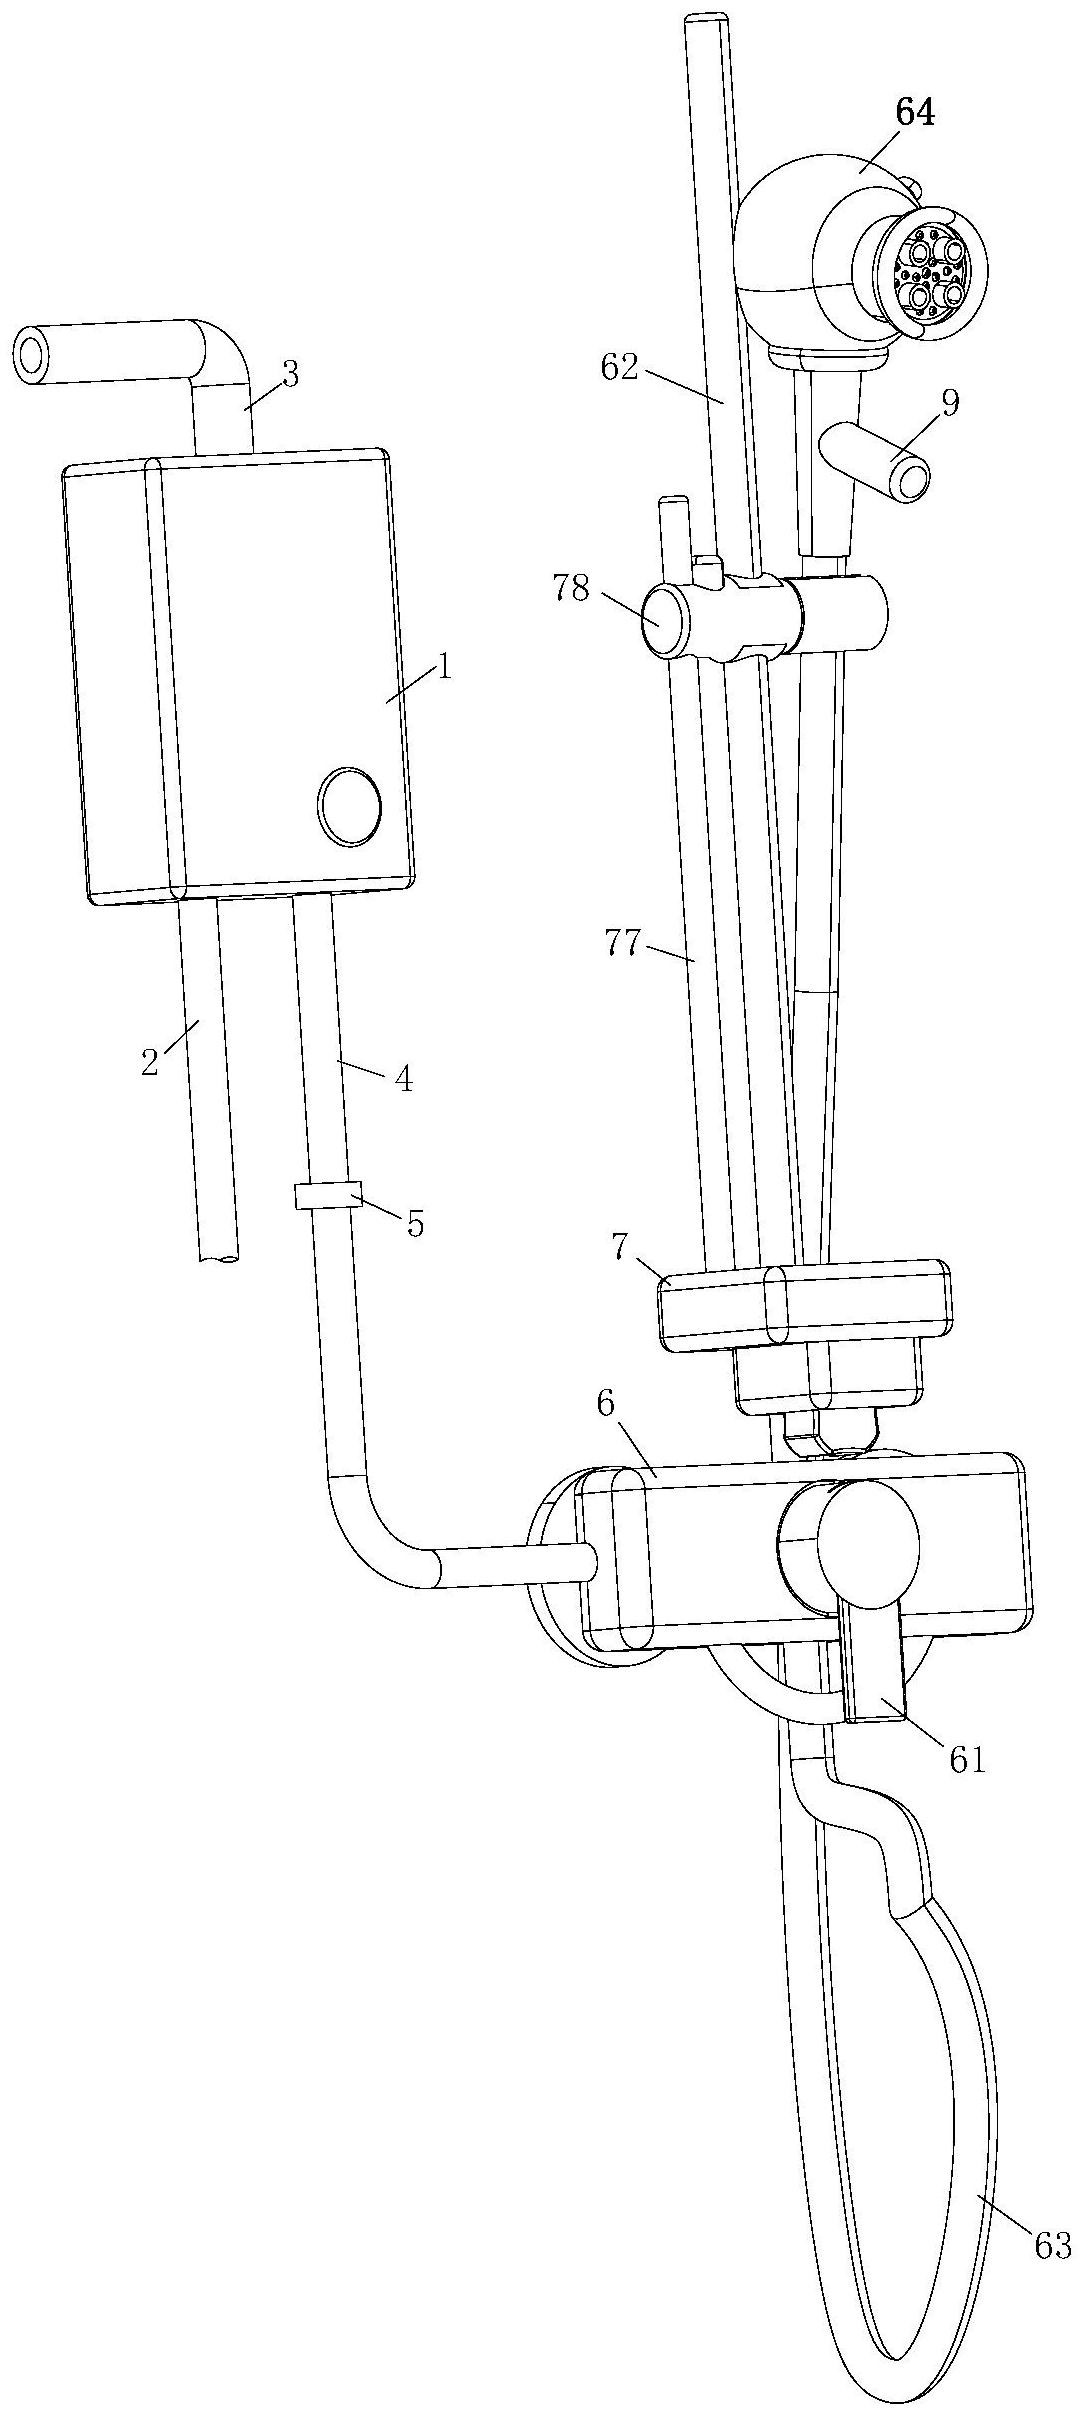 一种燃气热水器专利图片